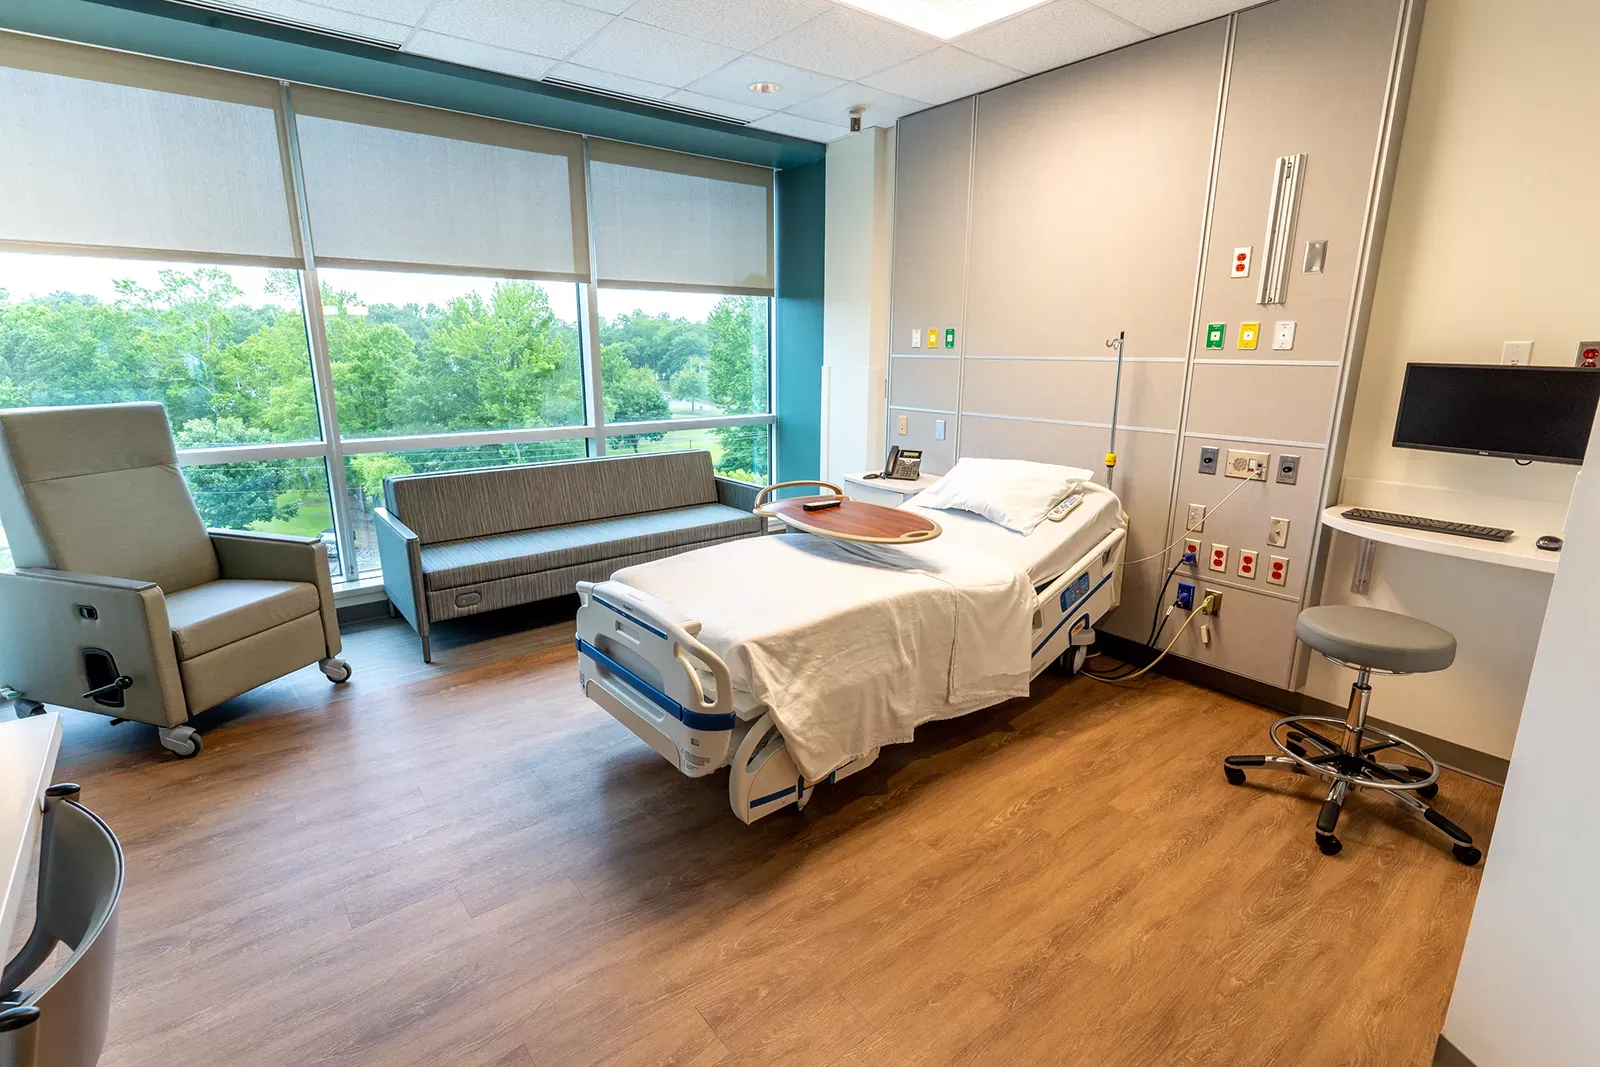 New patient room